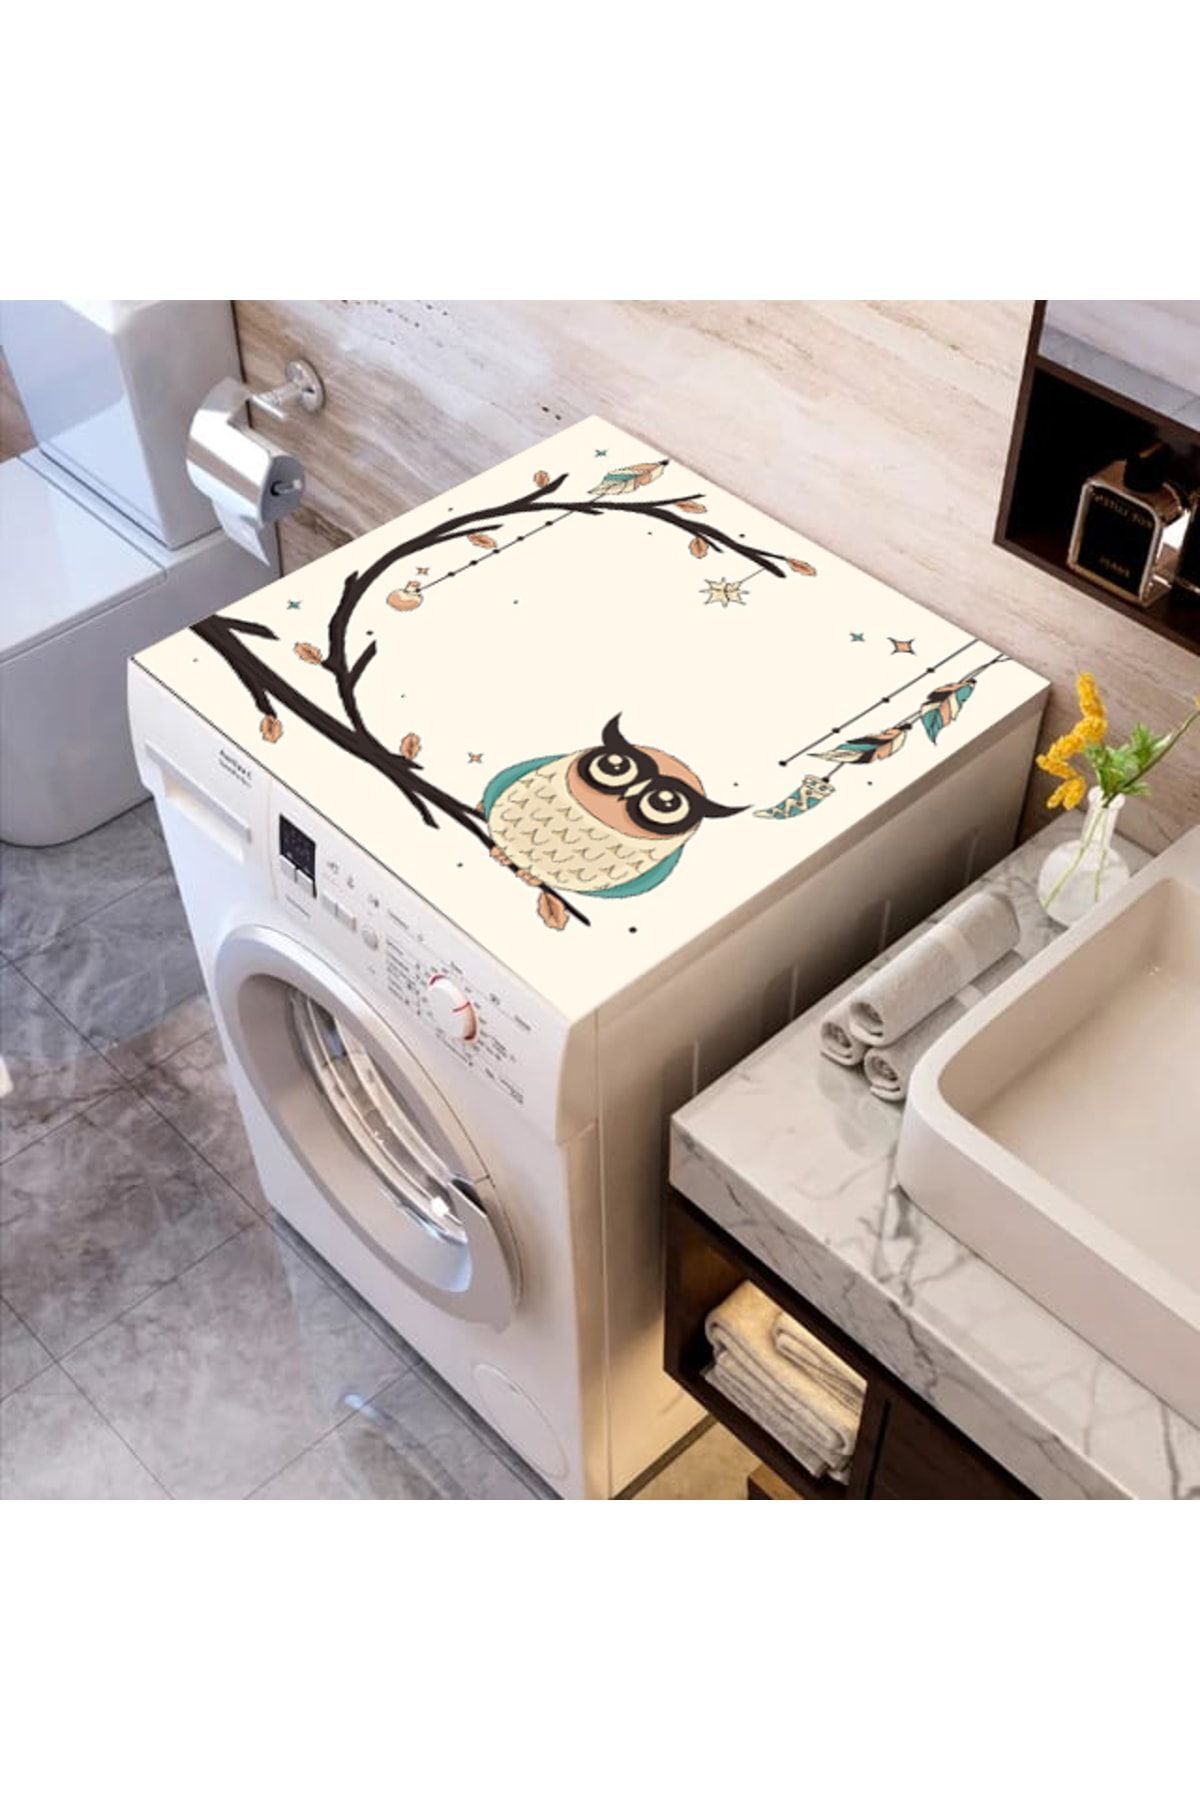 ALAMODECOR Renkli Baskılı Çamaşır Makine Örtüsü Kumaş Örtü 62 Cm X 62 Cm | Banyo Düzenleyici